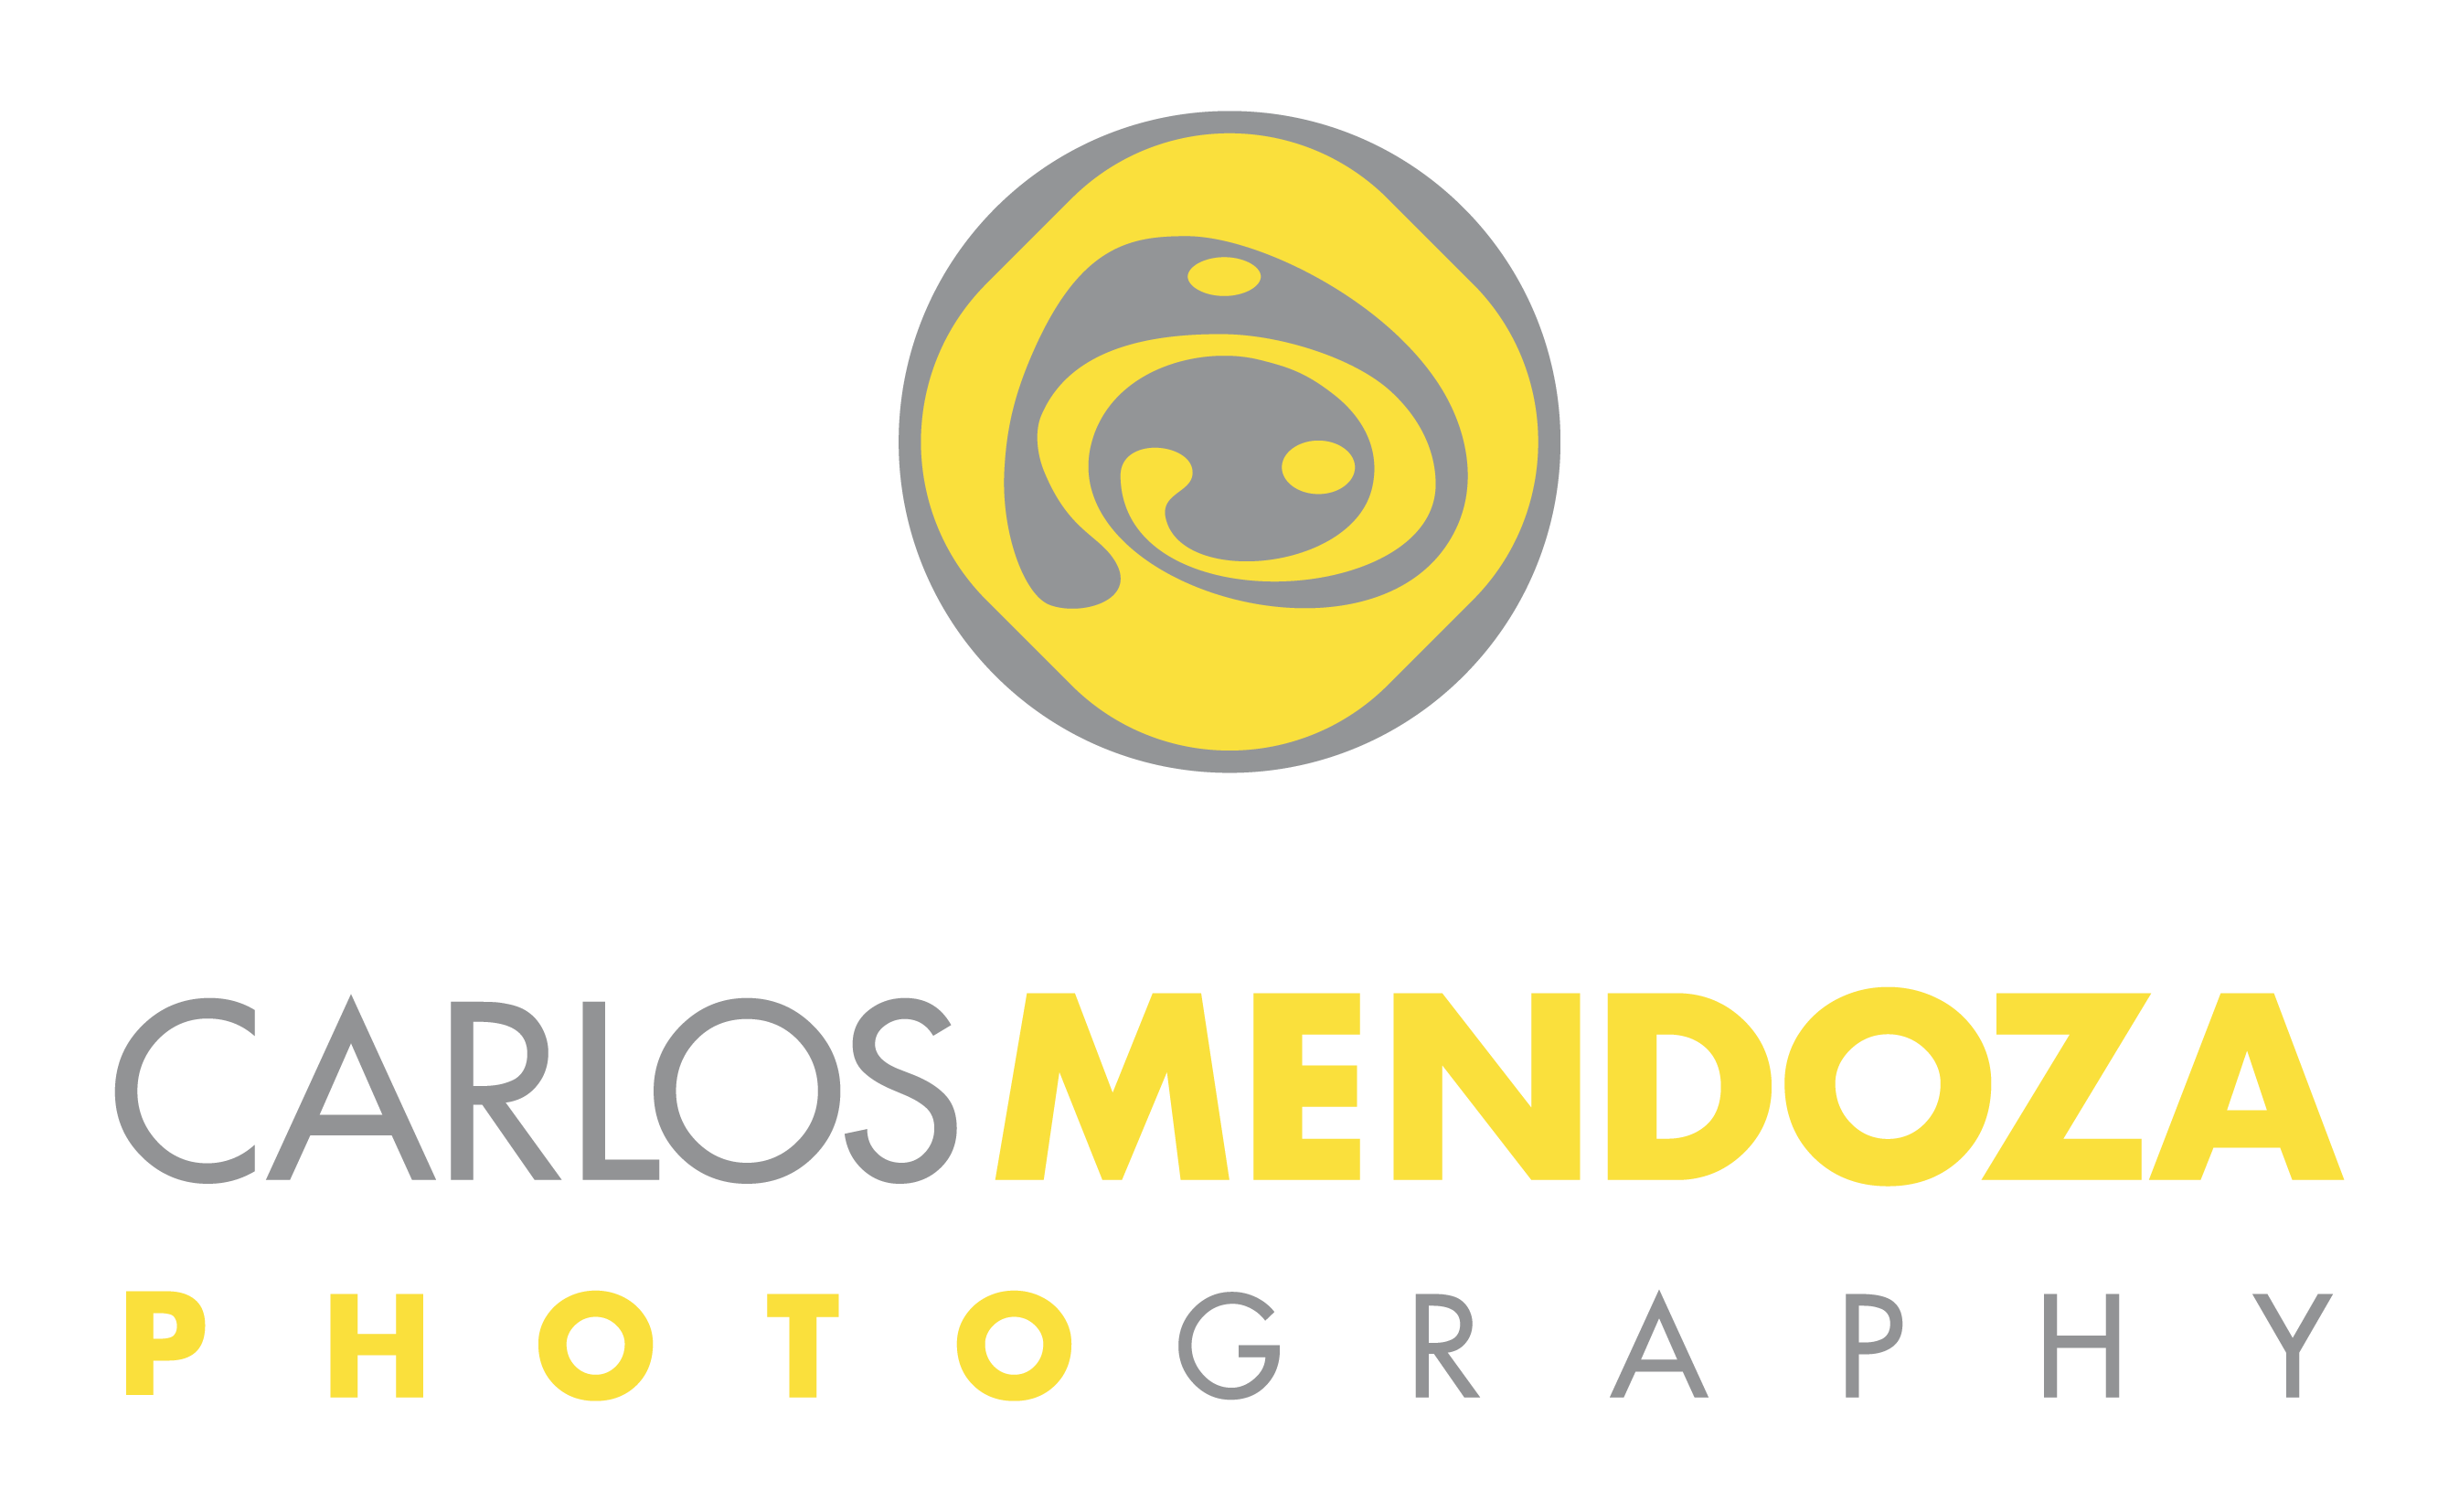 Carlos Mendoza Photography